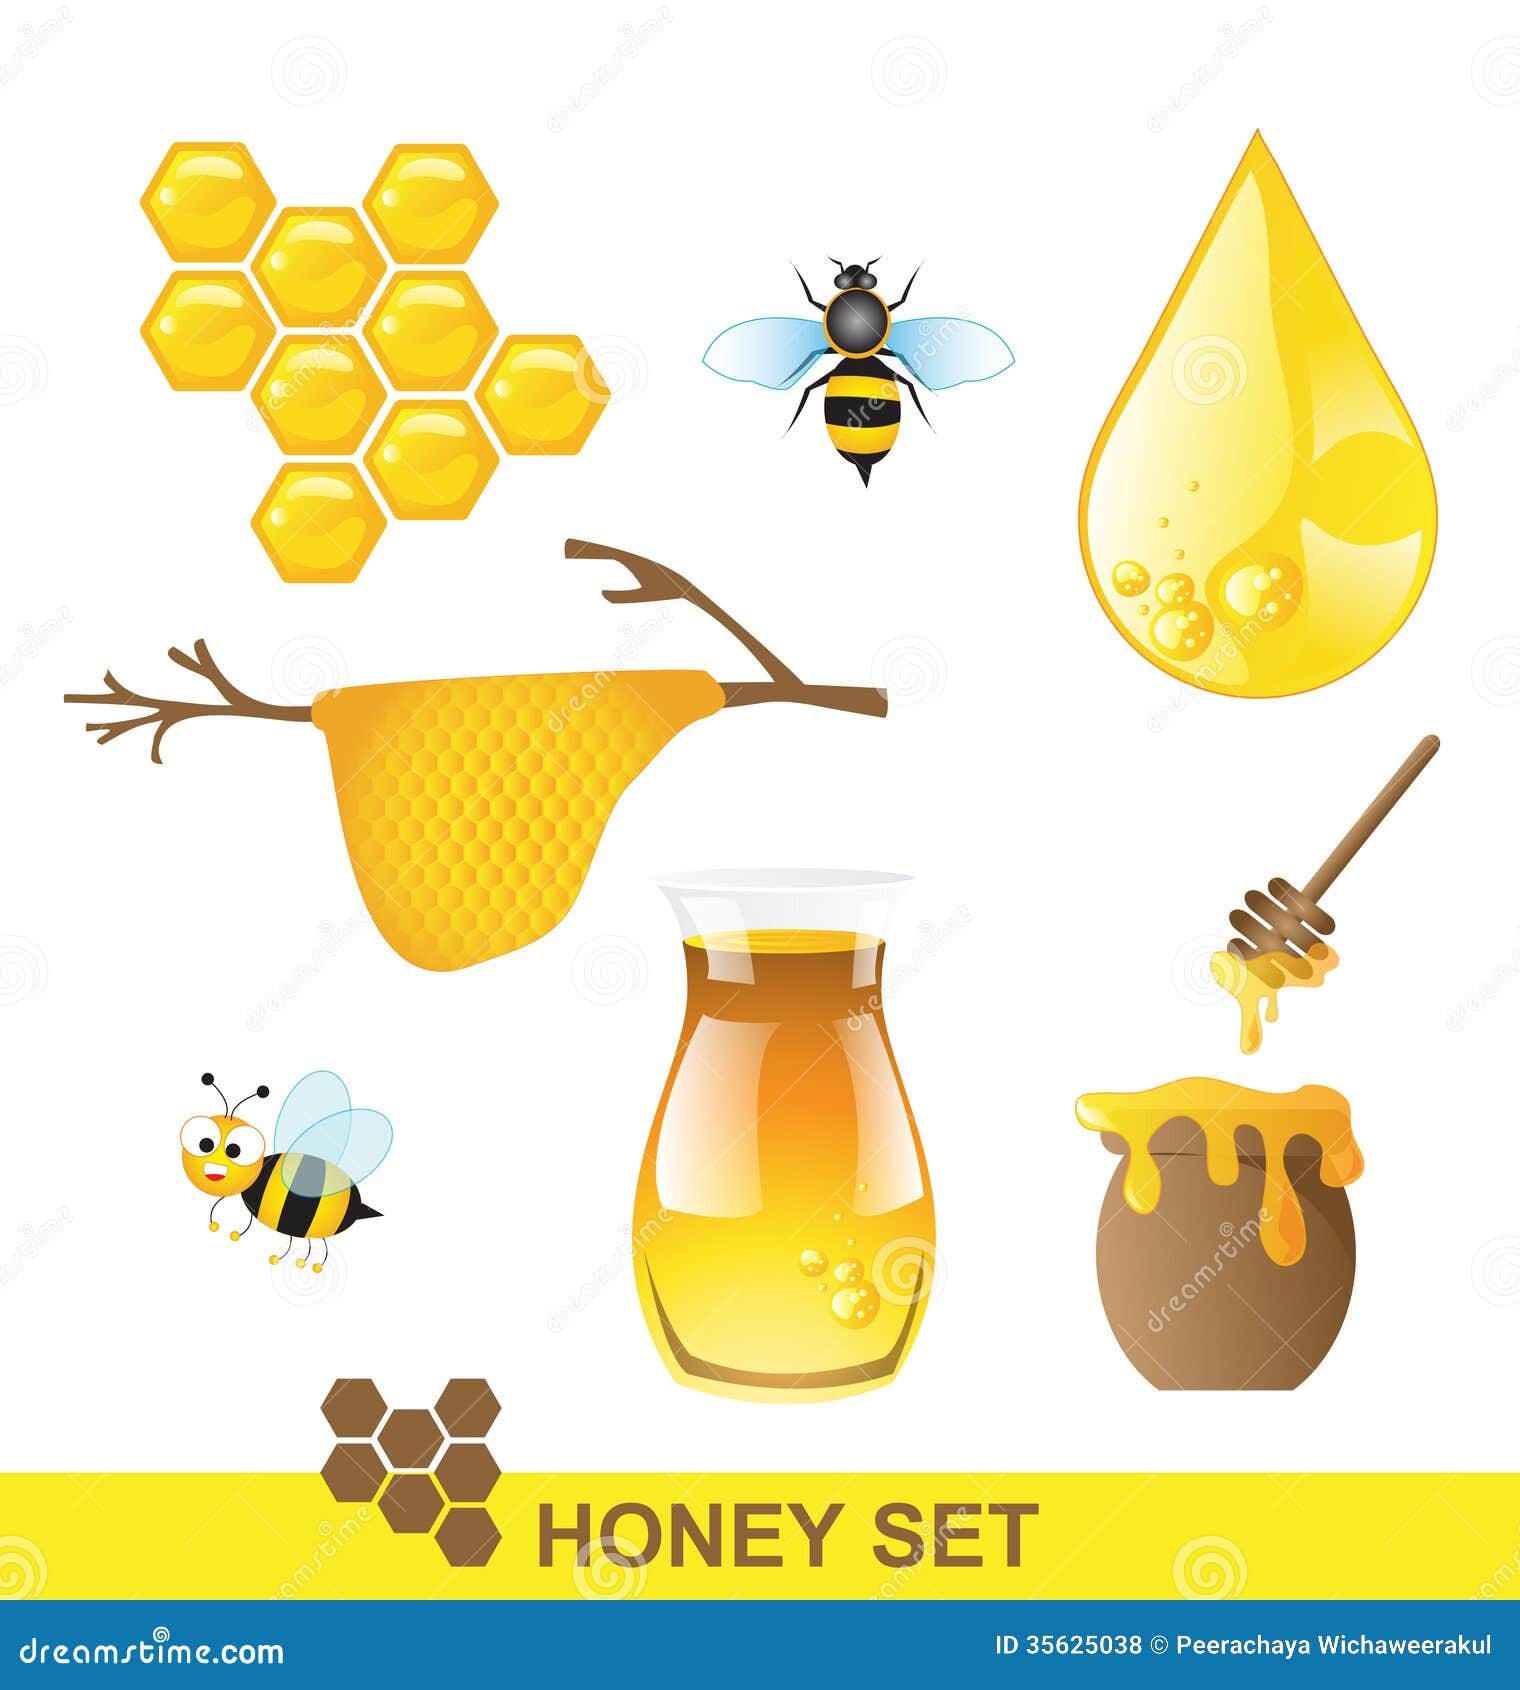 honey bee clipart ai - photo #14